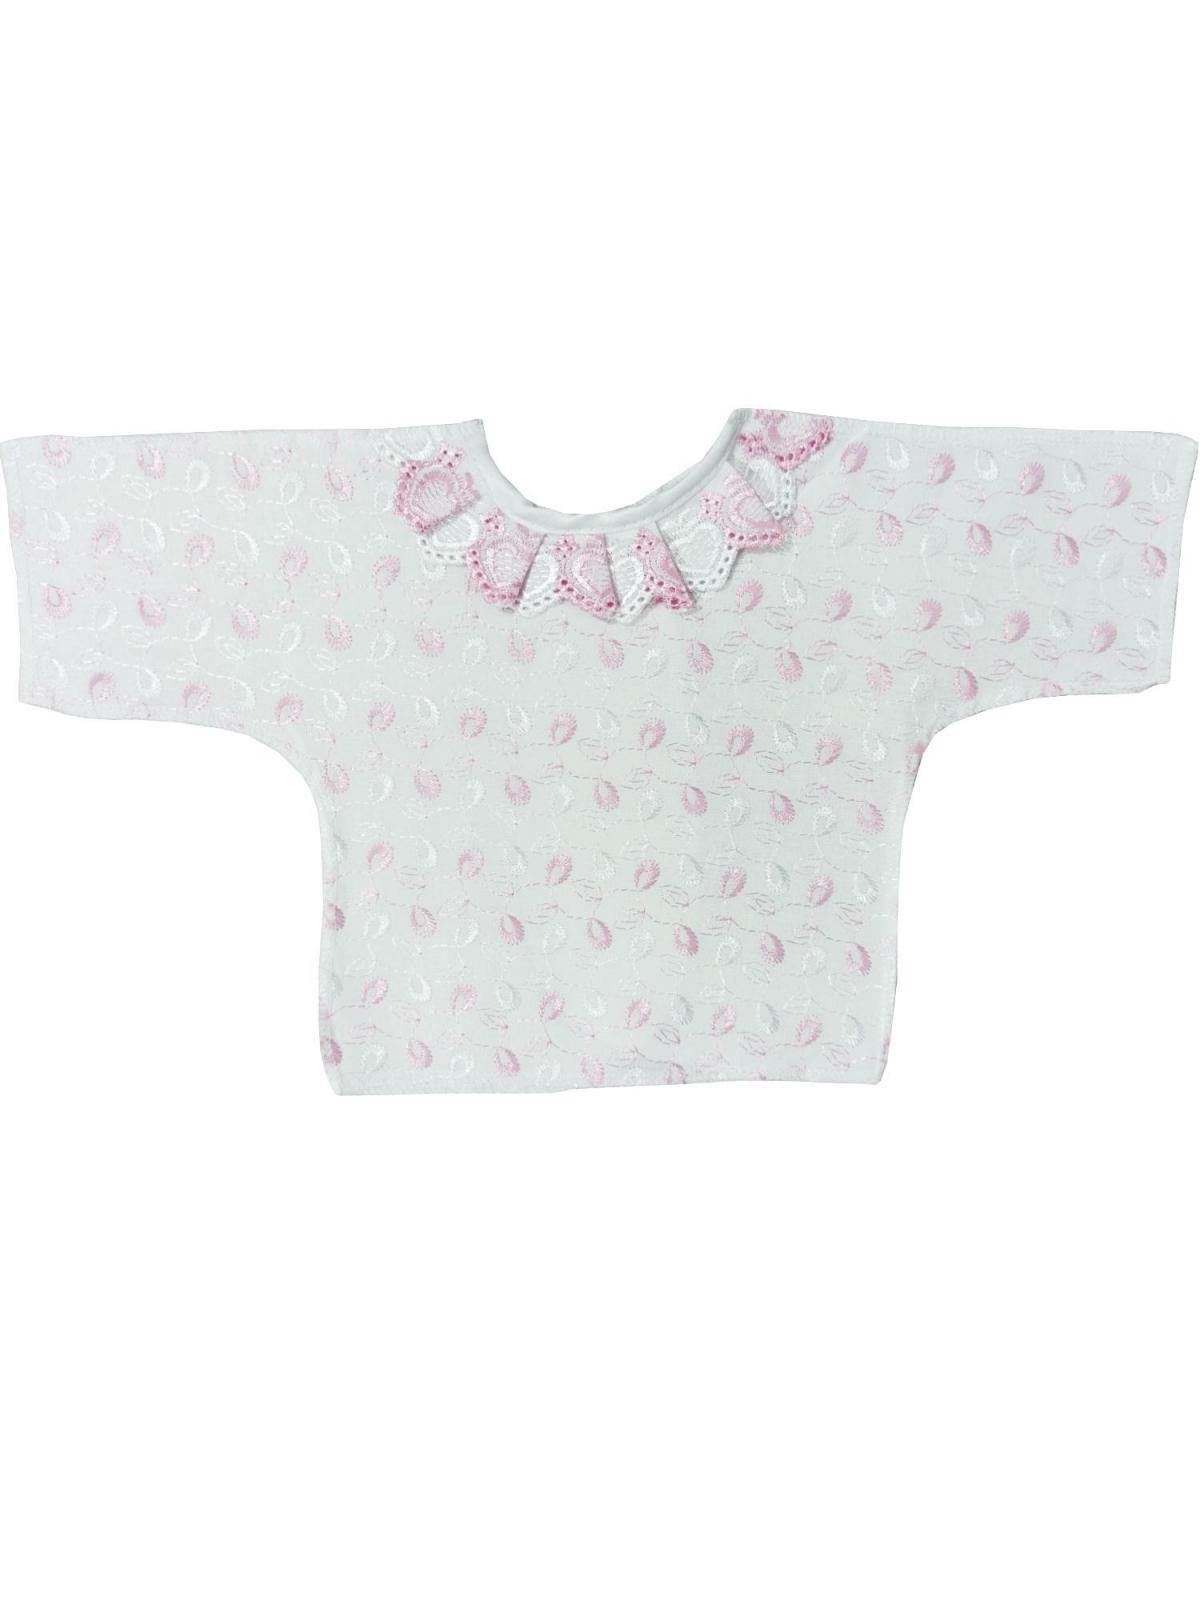 Рубашка шитьевая розовая р.20-56 2030